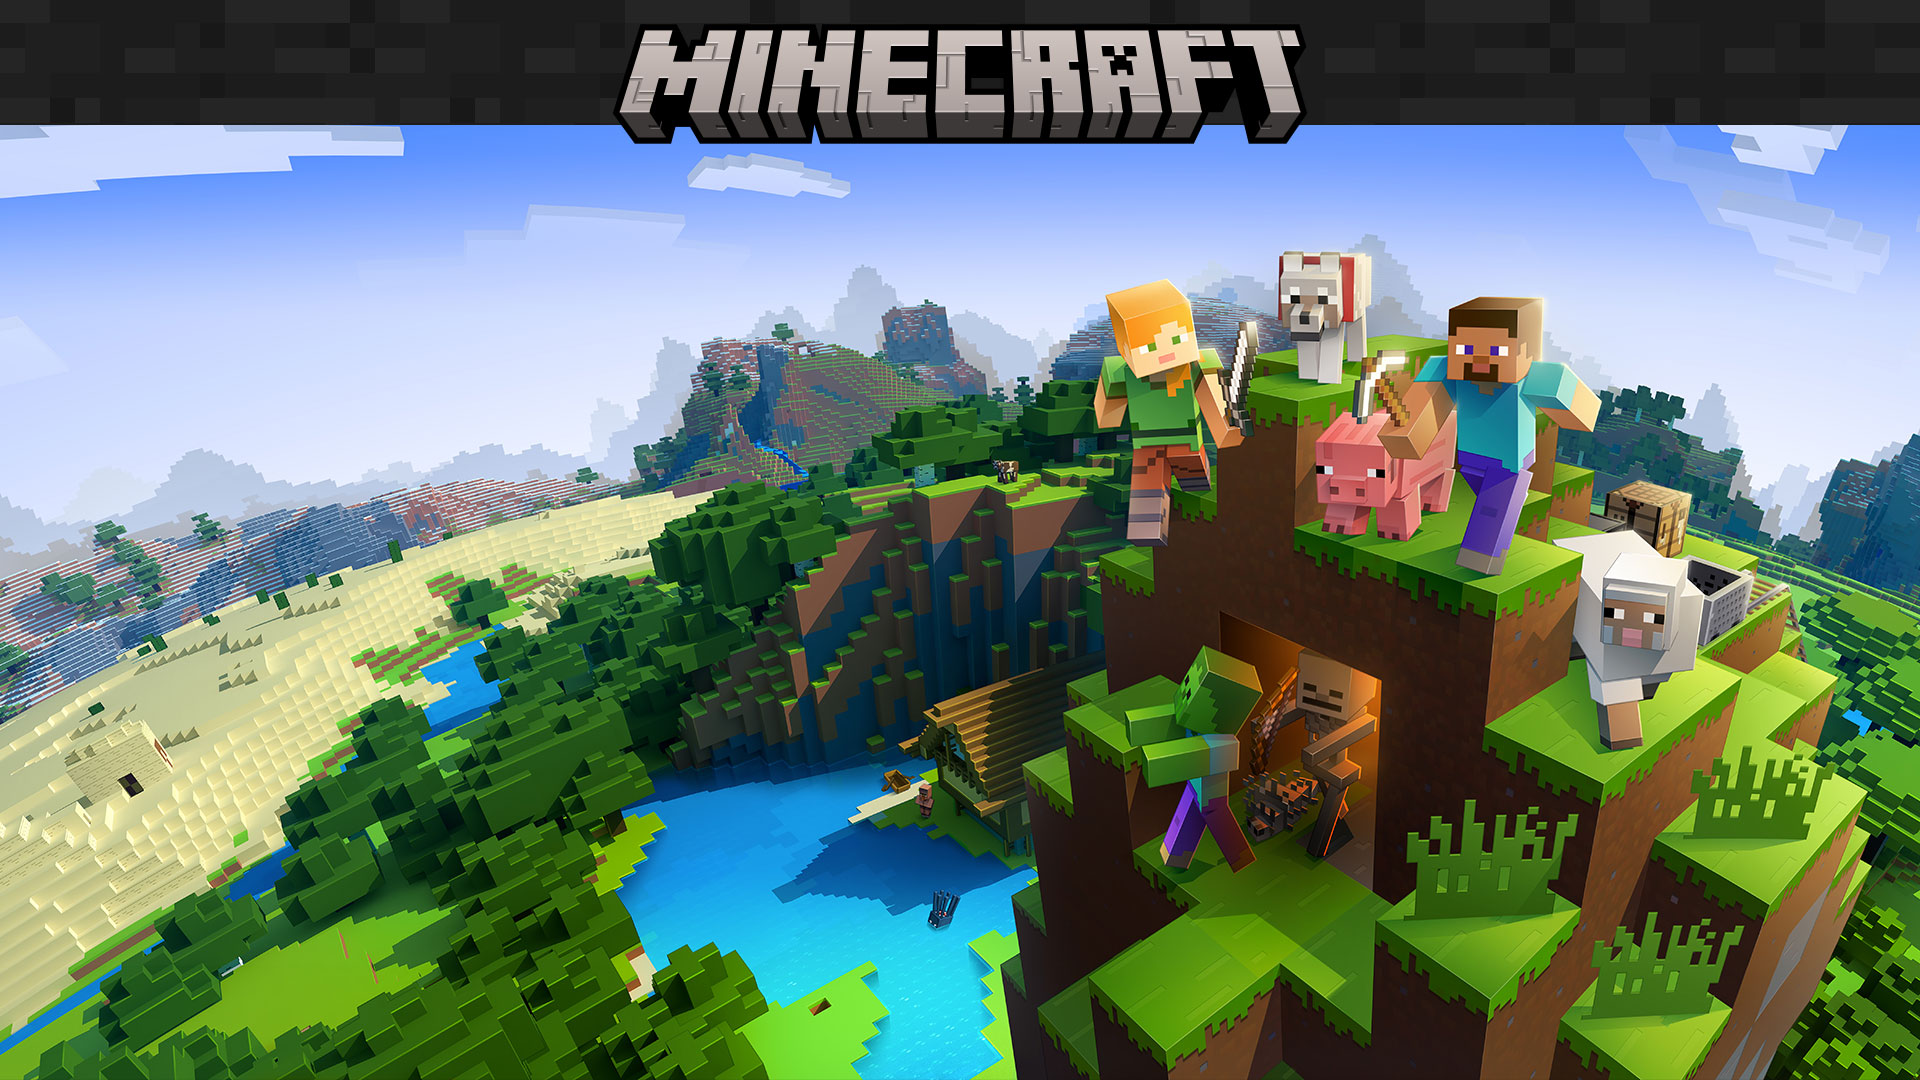 Küplerden oluşan çevre arka planında duran oyun içi karakterlerin bulunduğu Minecraft logosu